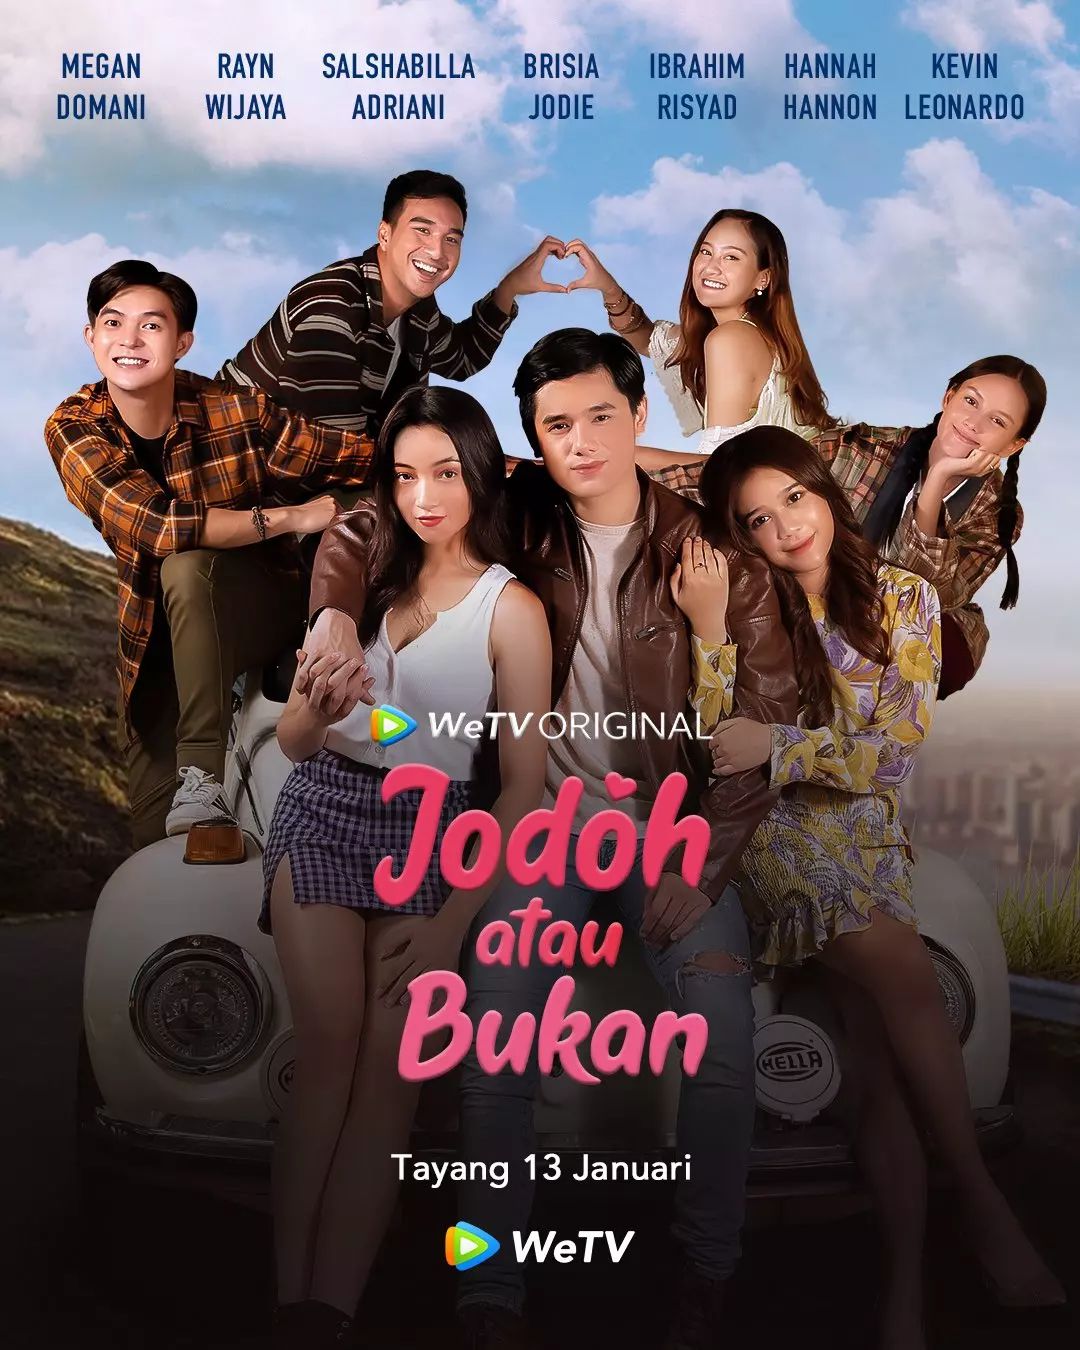 TV ratings for Jodoh Atau Bukan in the United States. wetv TV series